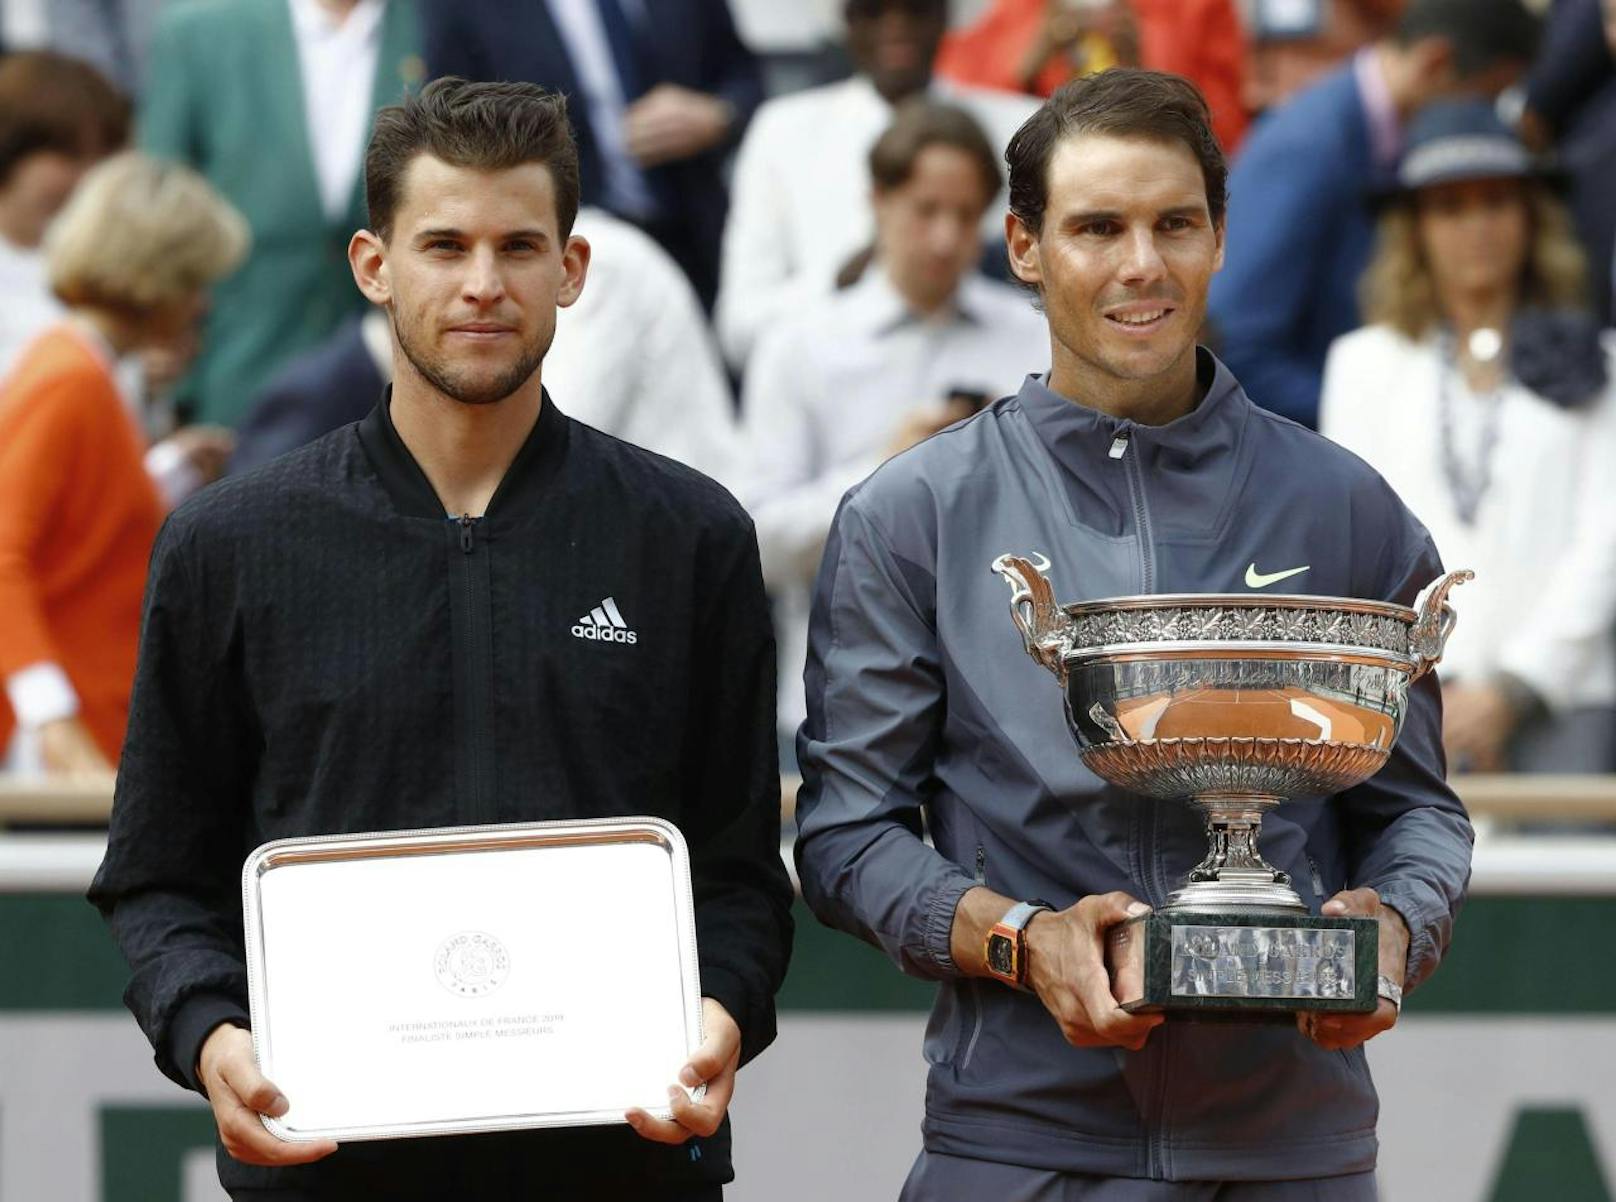 Bei den French Open gelingt ihm erneut der Finaleinzug, aber wieder setzt es eine Niederlage gegen Rafael Nadal. Der Spanier siegt in vier Sätzen, holt seinen zwölften Titel in Roland Garros.